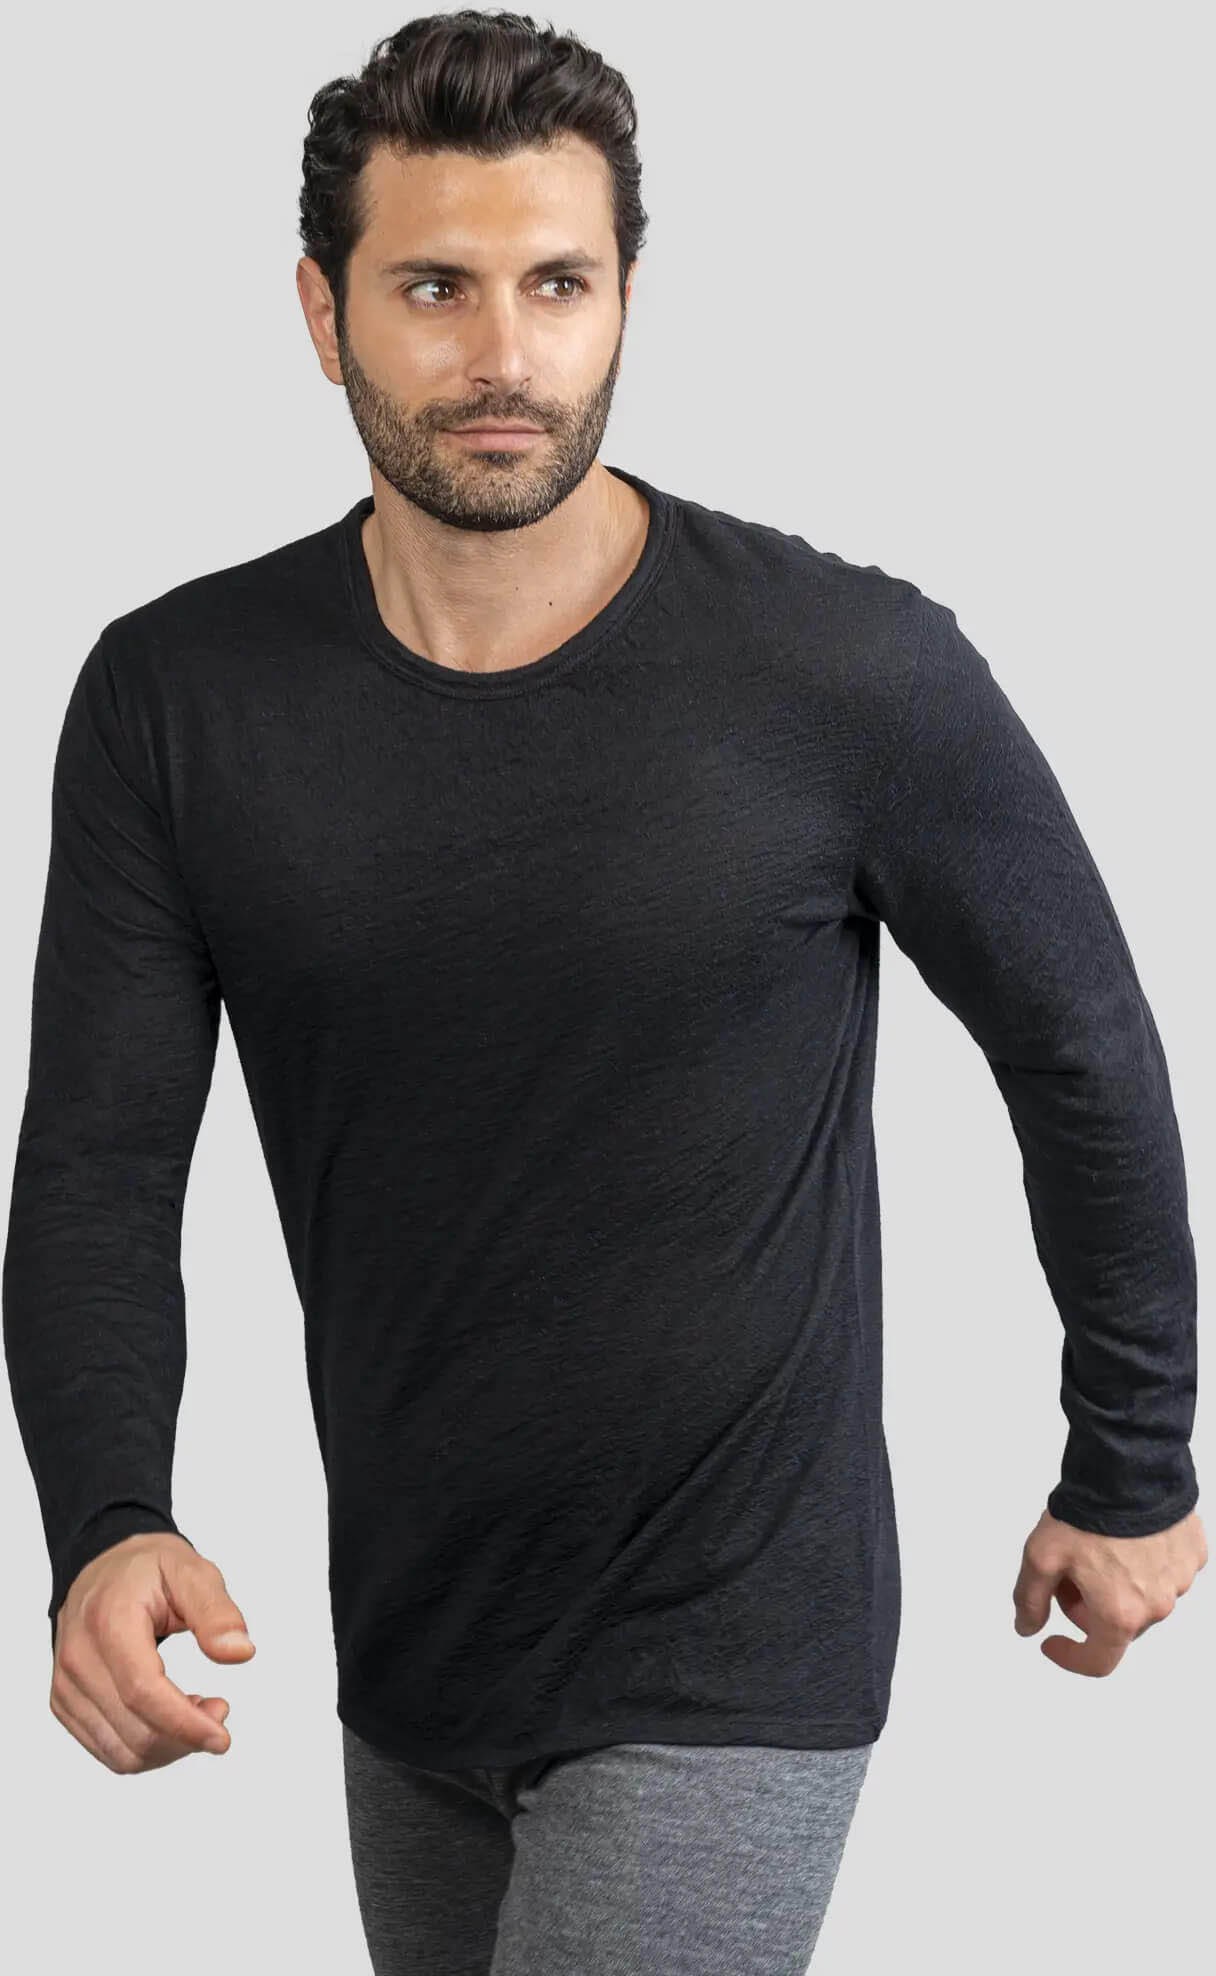 160 Сверхлегкая базовая рубашка с длинными рукавами из шерсти альпаки — мужская Arms of Andes, черный